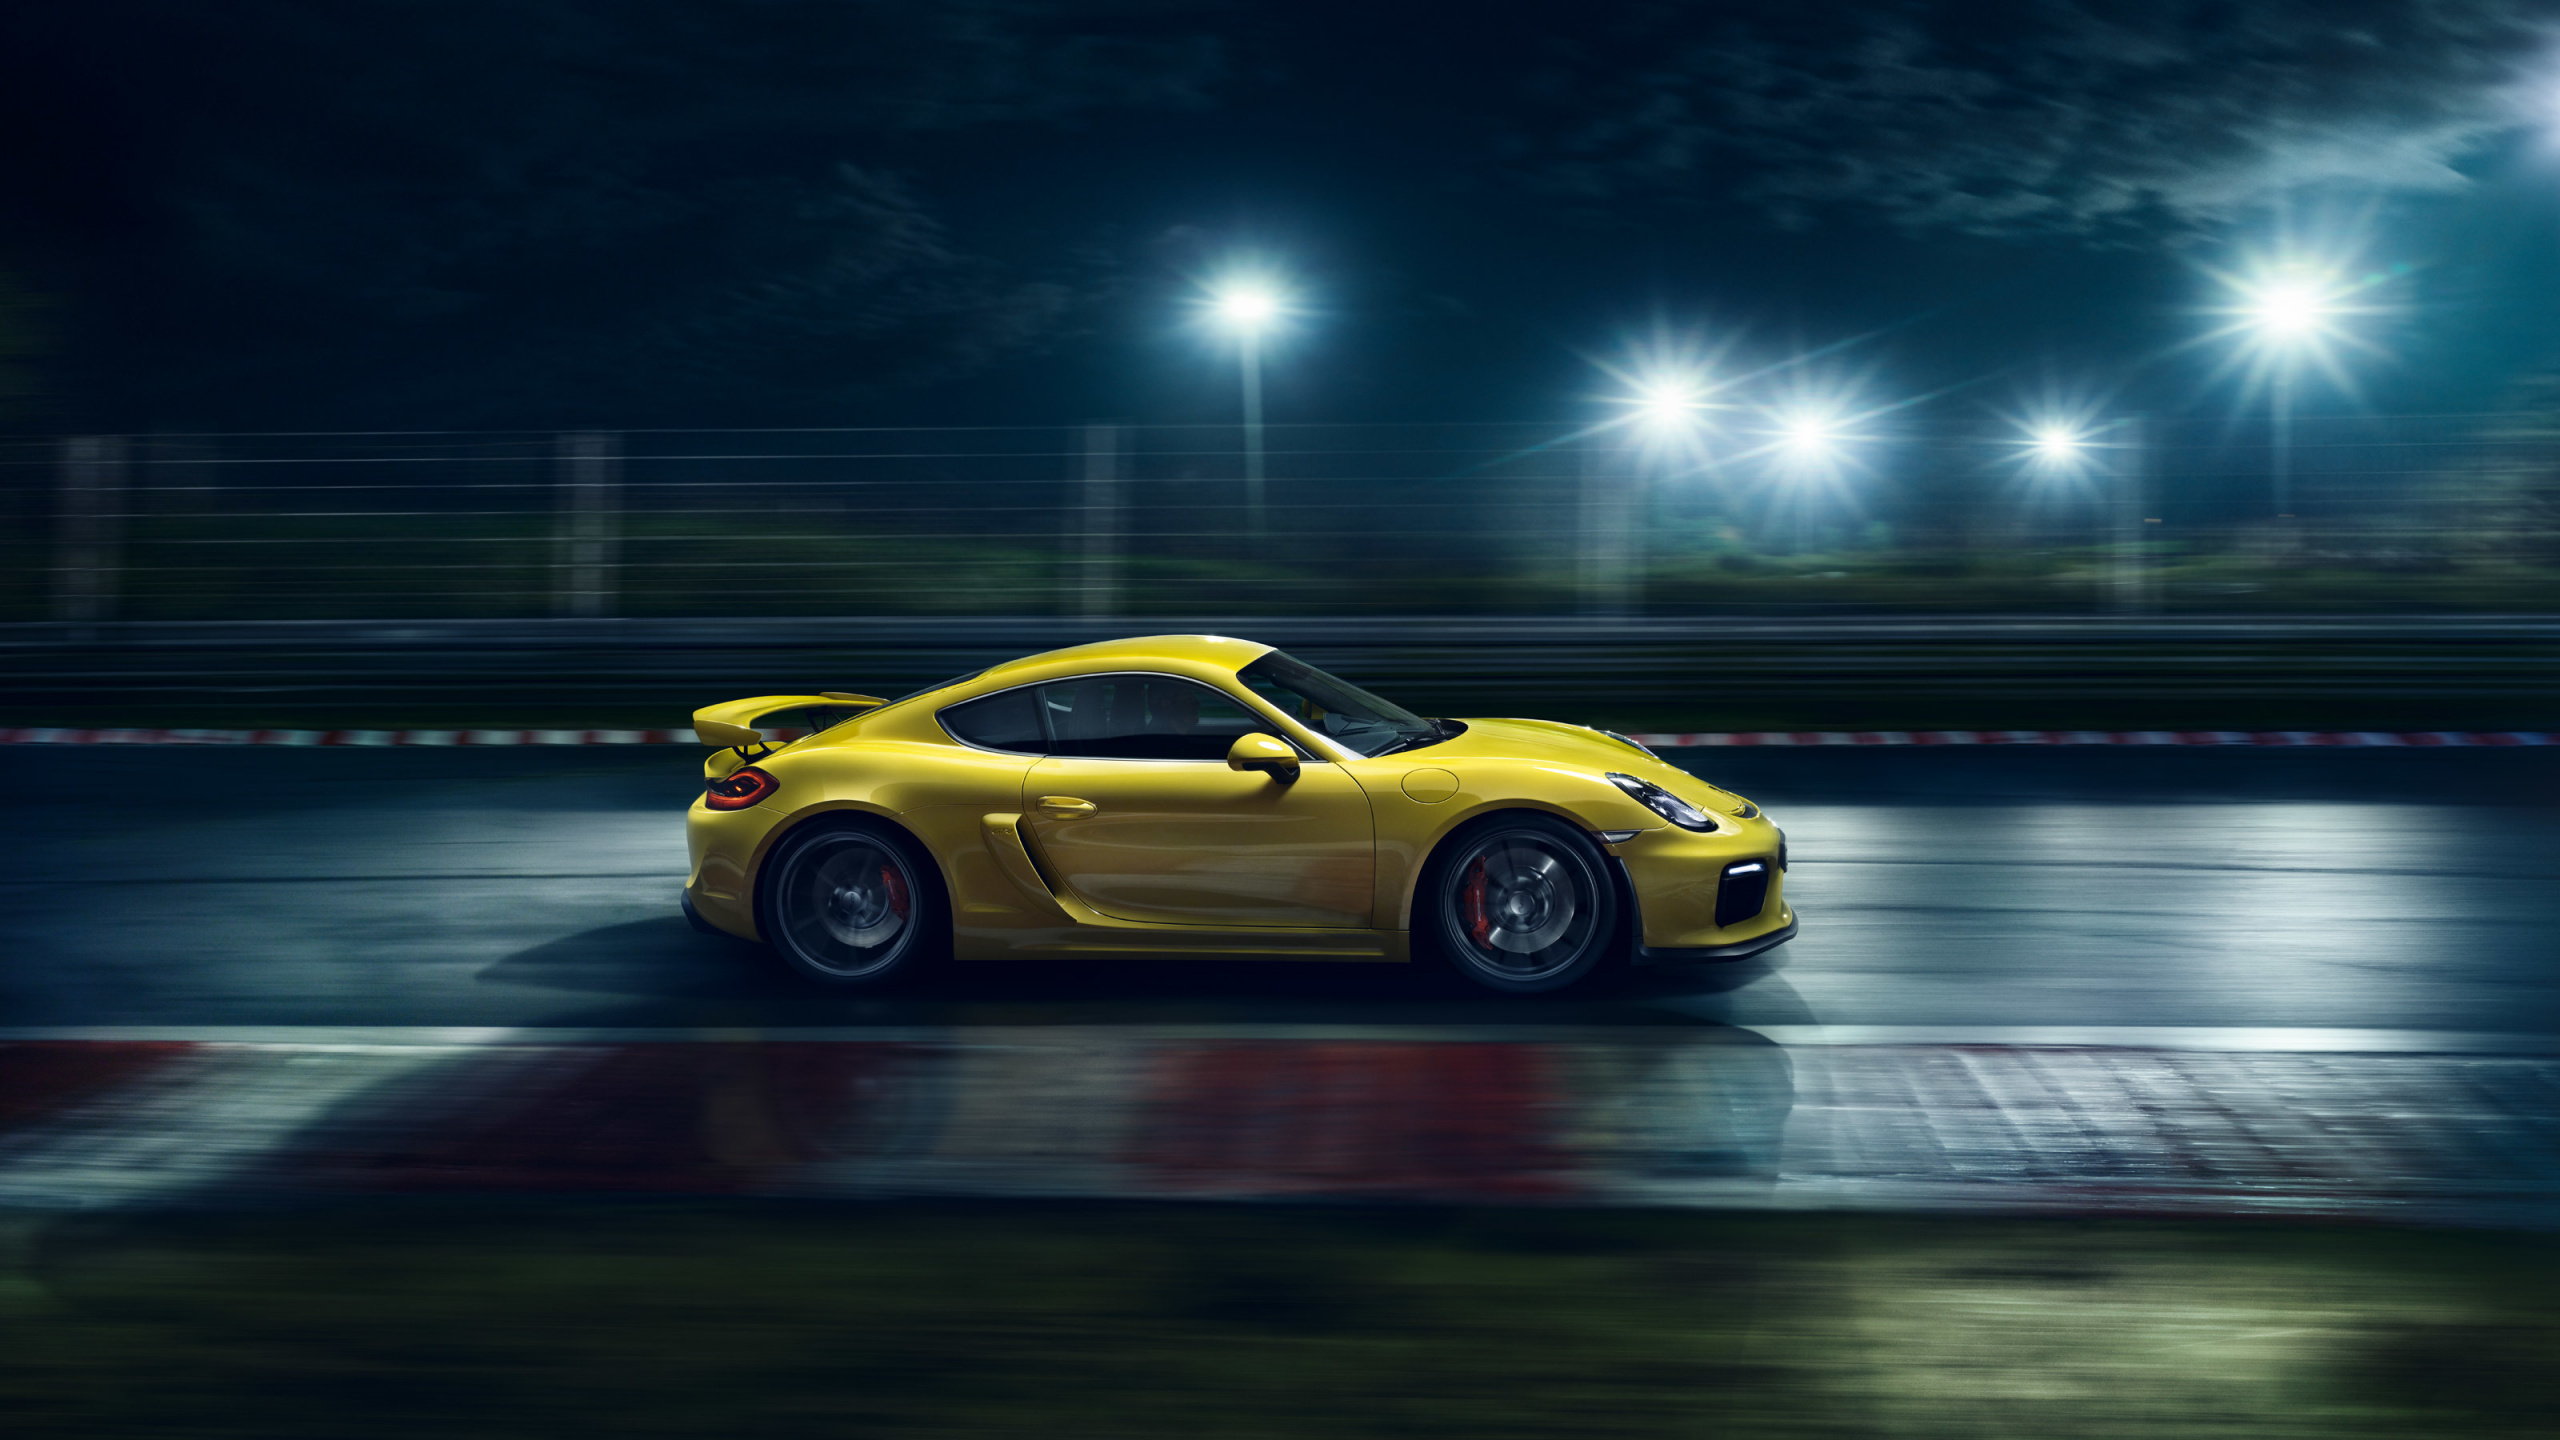 Porsche 911 Jaune Sur Route la Nuit. Wallpaper in 2560x1440 Resolution